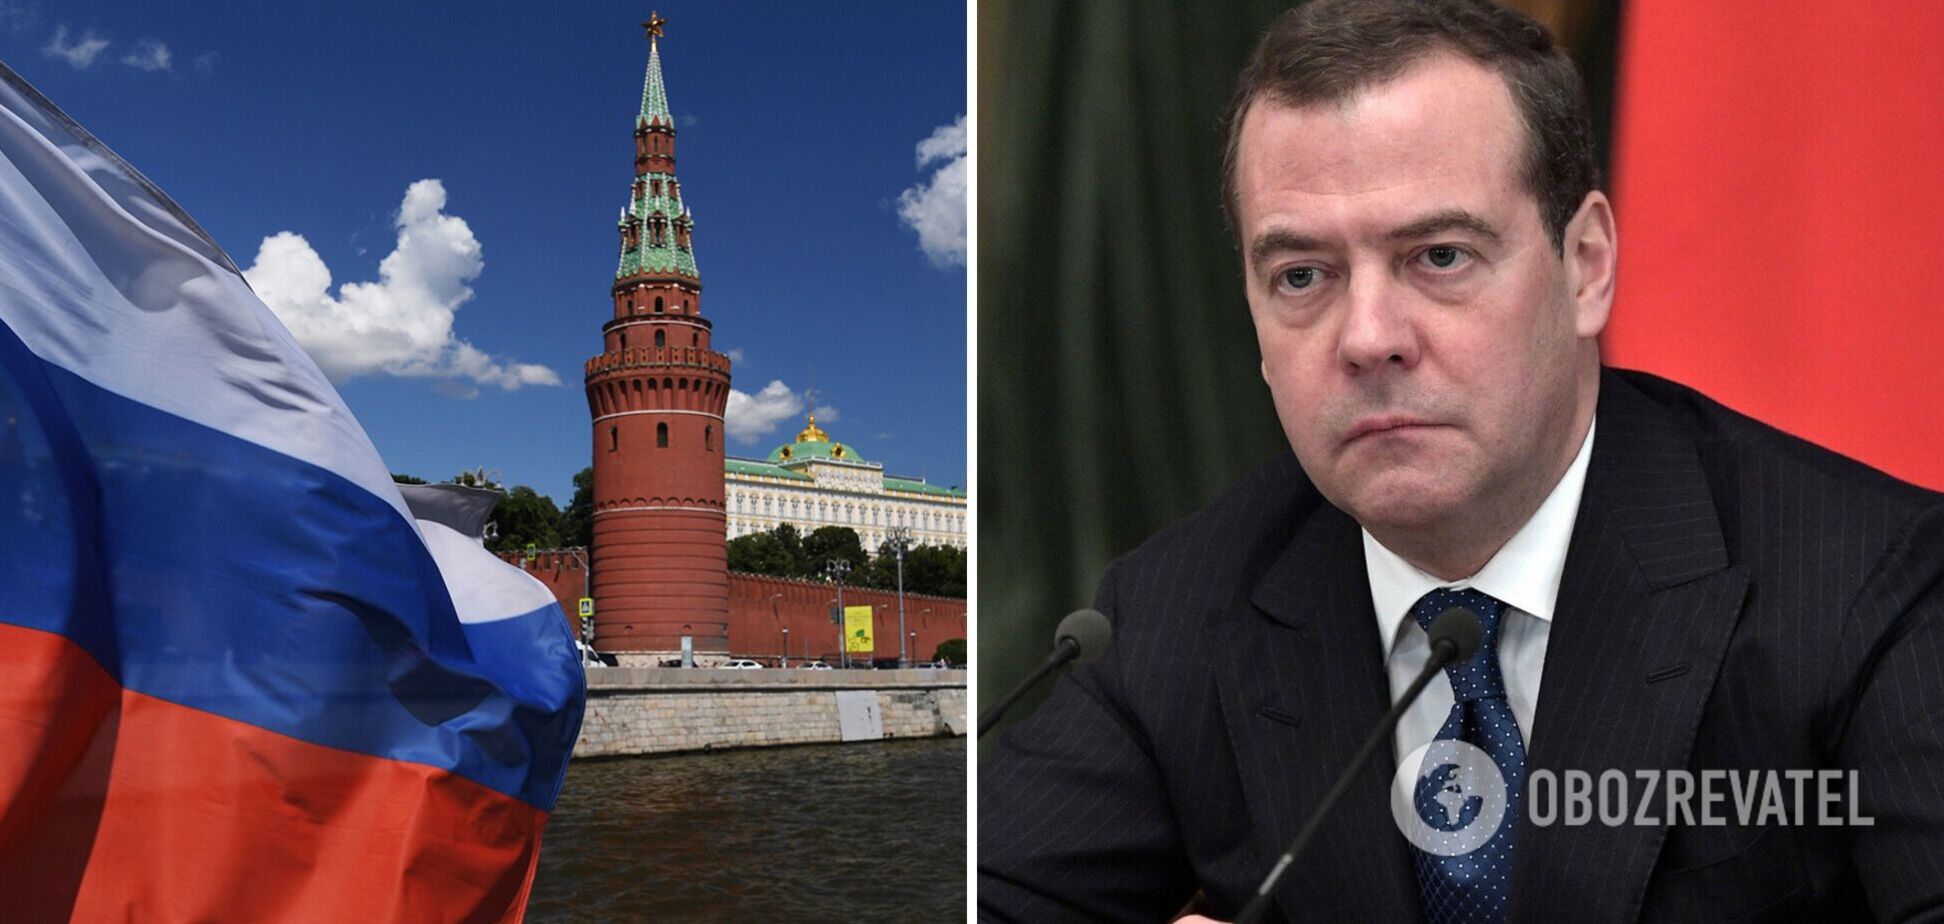 Медведєв відкрито заявив, що Росії наплювати на невизнання зміни кордонів України з боку G7